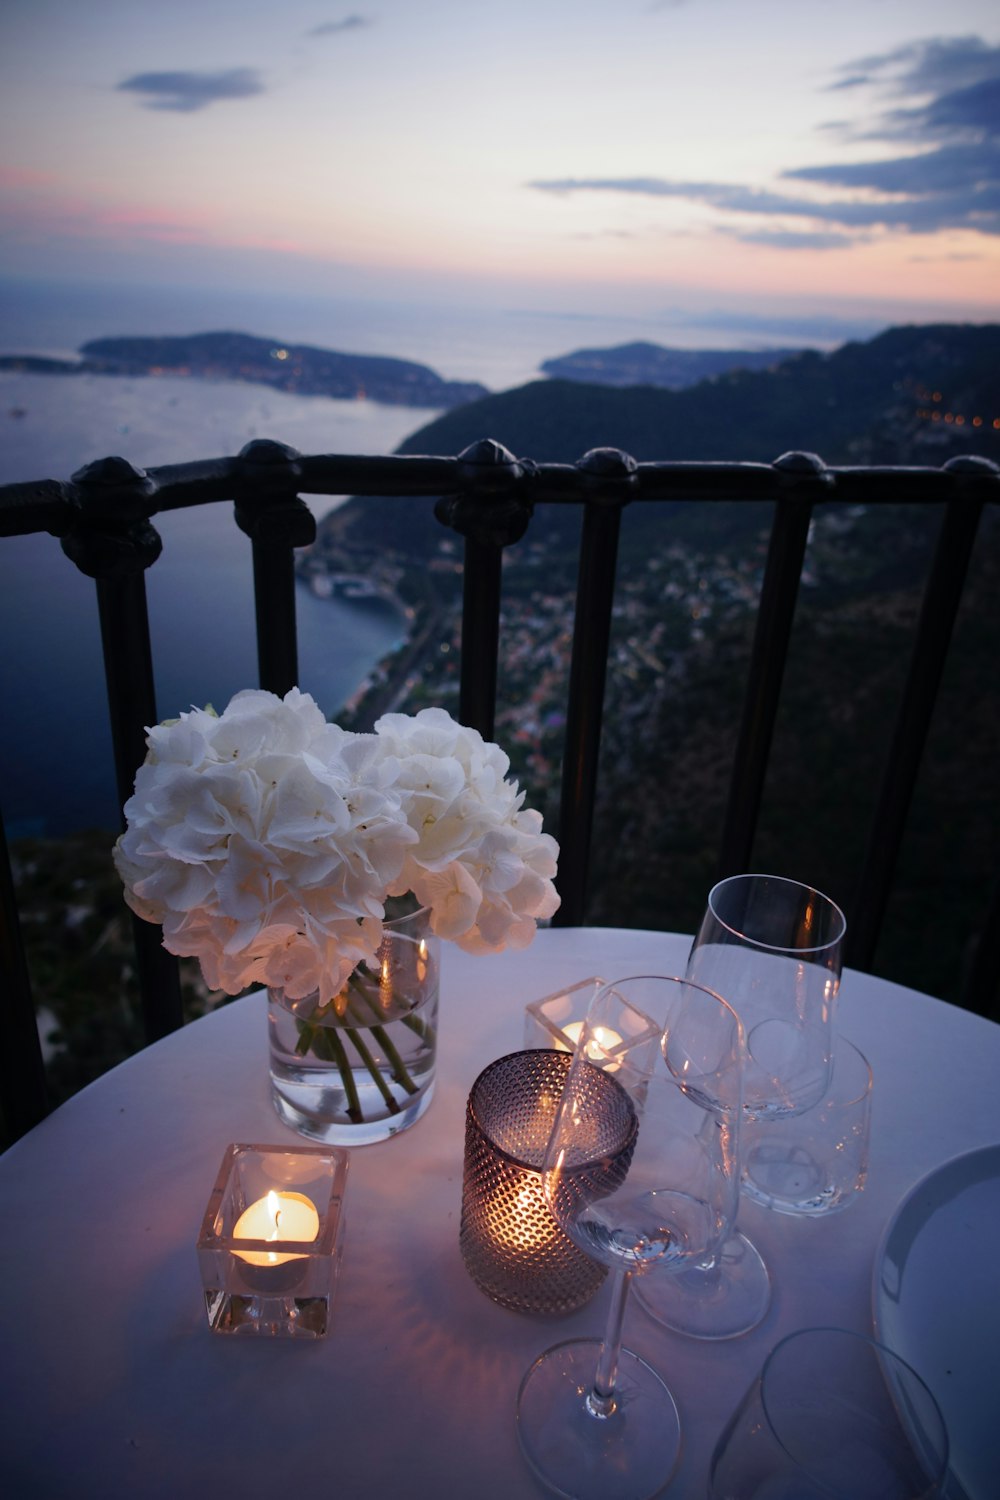 due bicchieri da vino trasparenti accanto alla candela tealight sul tavolo